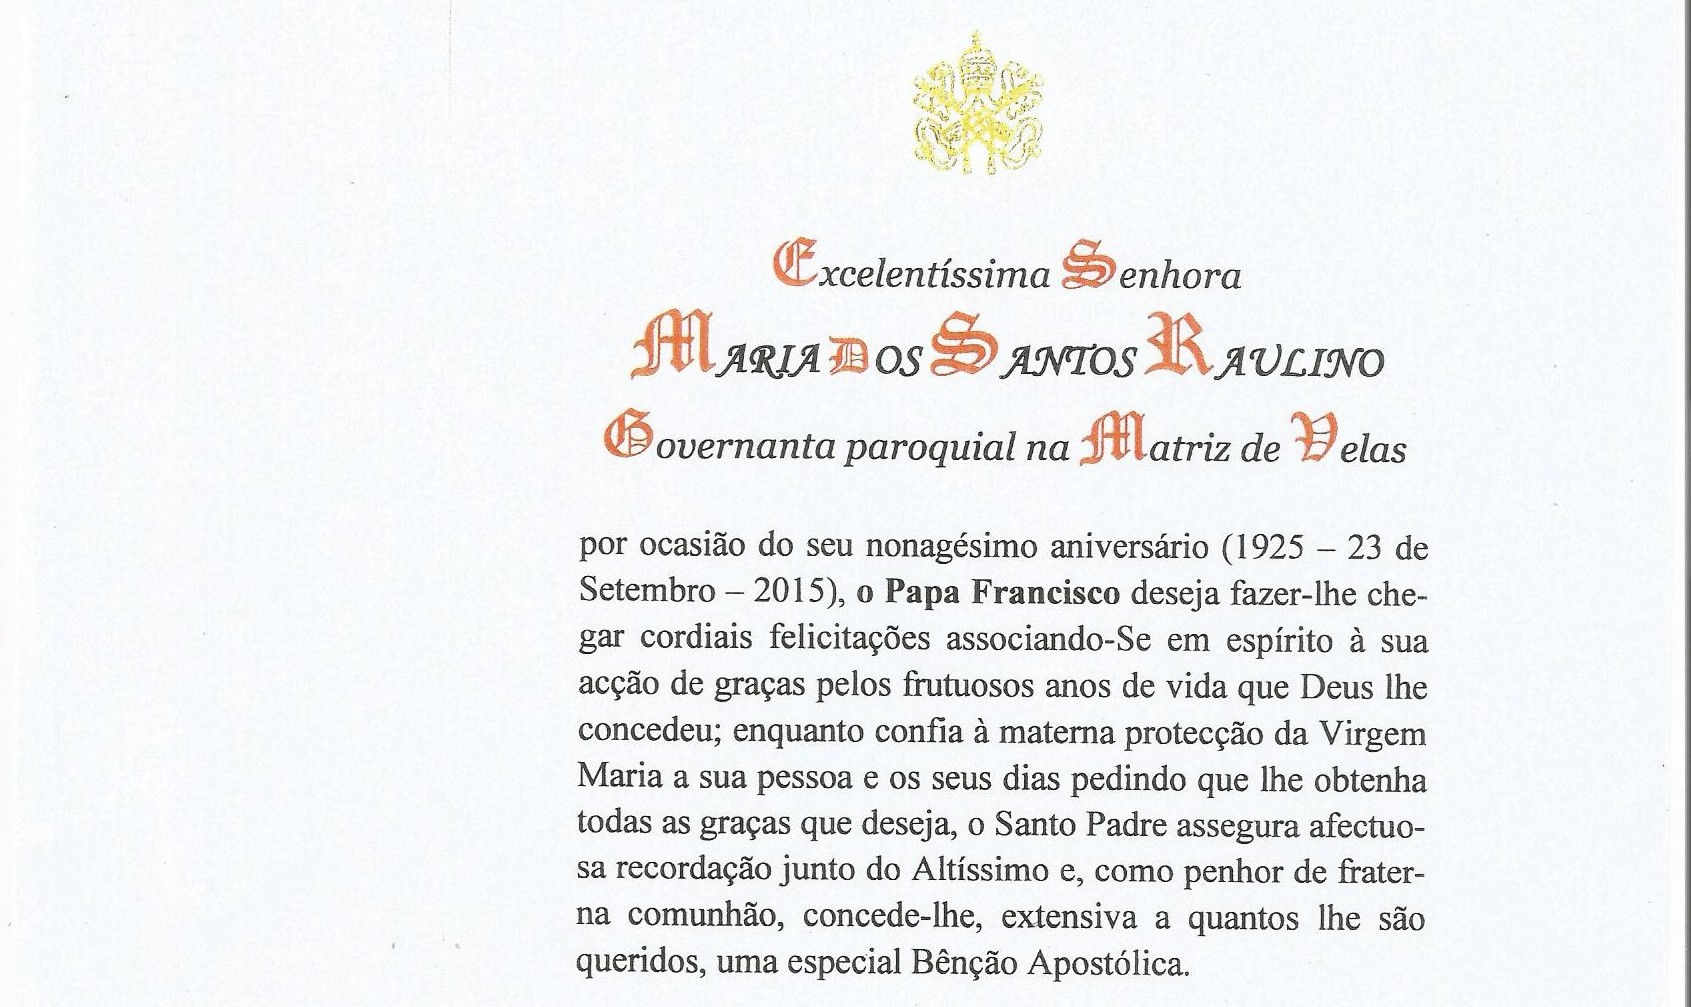 Maria Raulino, Governanta Paroquial, é homenageada com carta do Papa Francisco nos seus 90 anos (c/áudio)